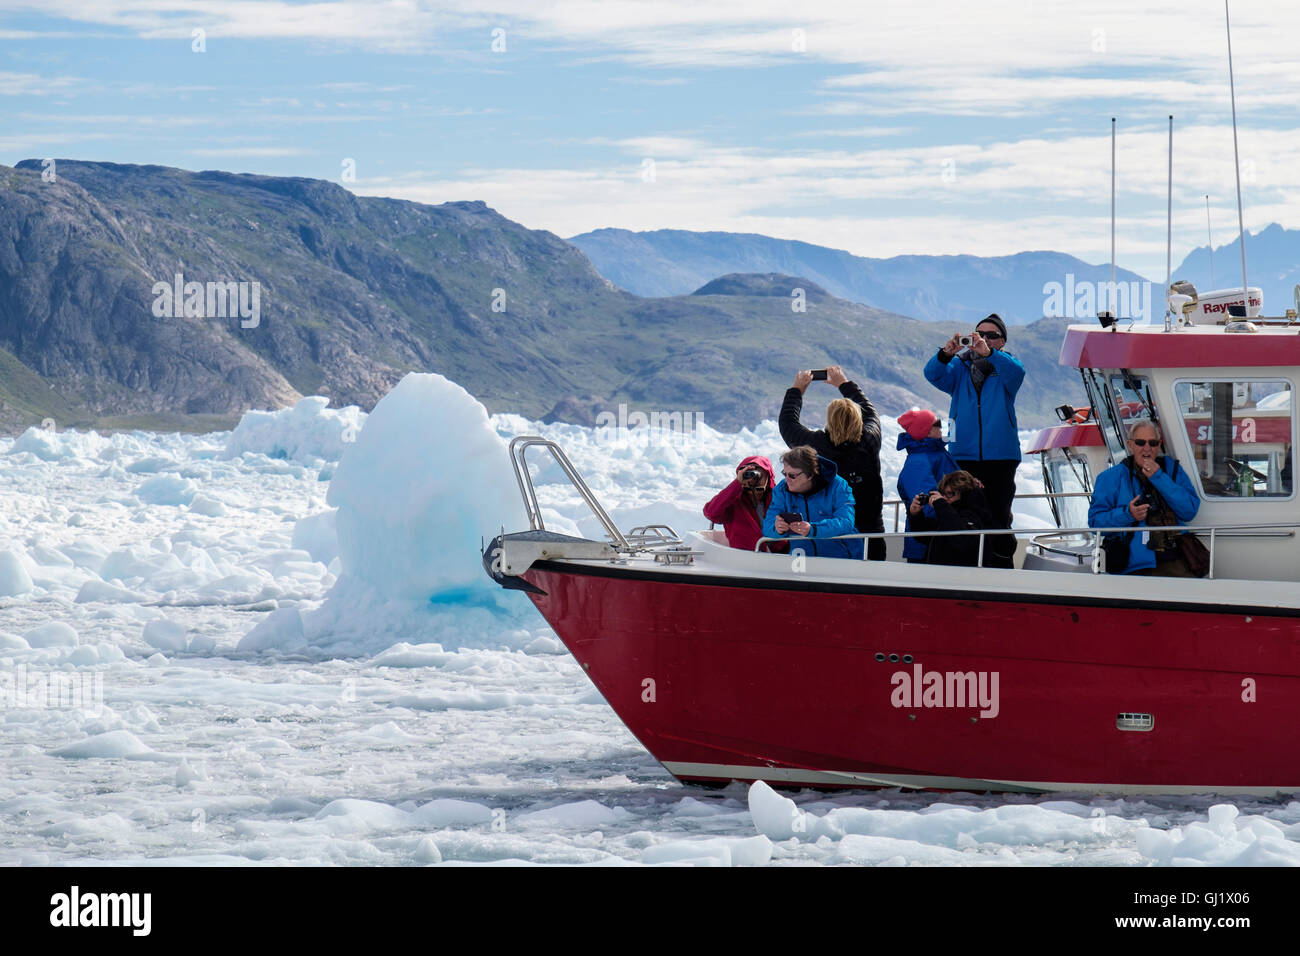 Les touristes en bateau rouge sont entourés de glace de mer dans le fjord Tunulliarfik, photographiant le fjord de Qooroq icefjord en été 2016. Narsarsuaq Sud Groenland Banque D'Images